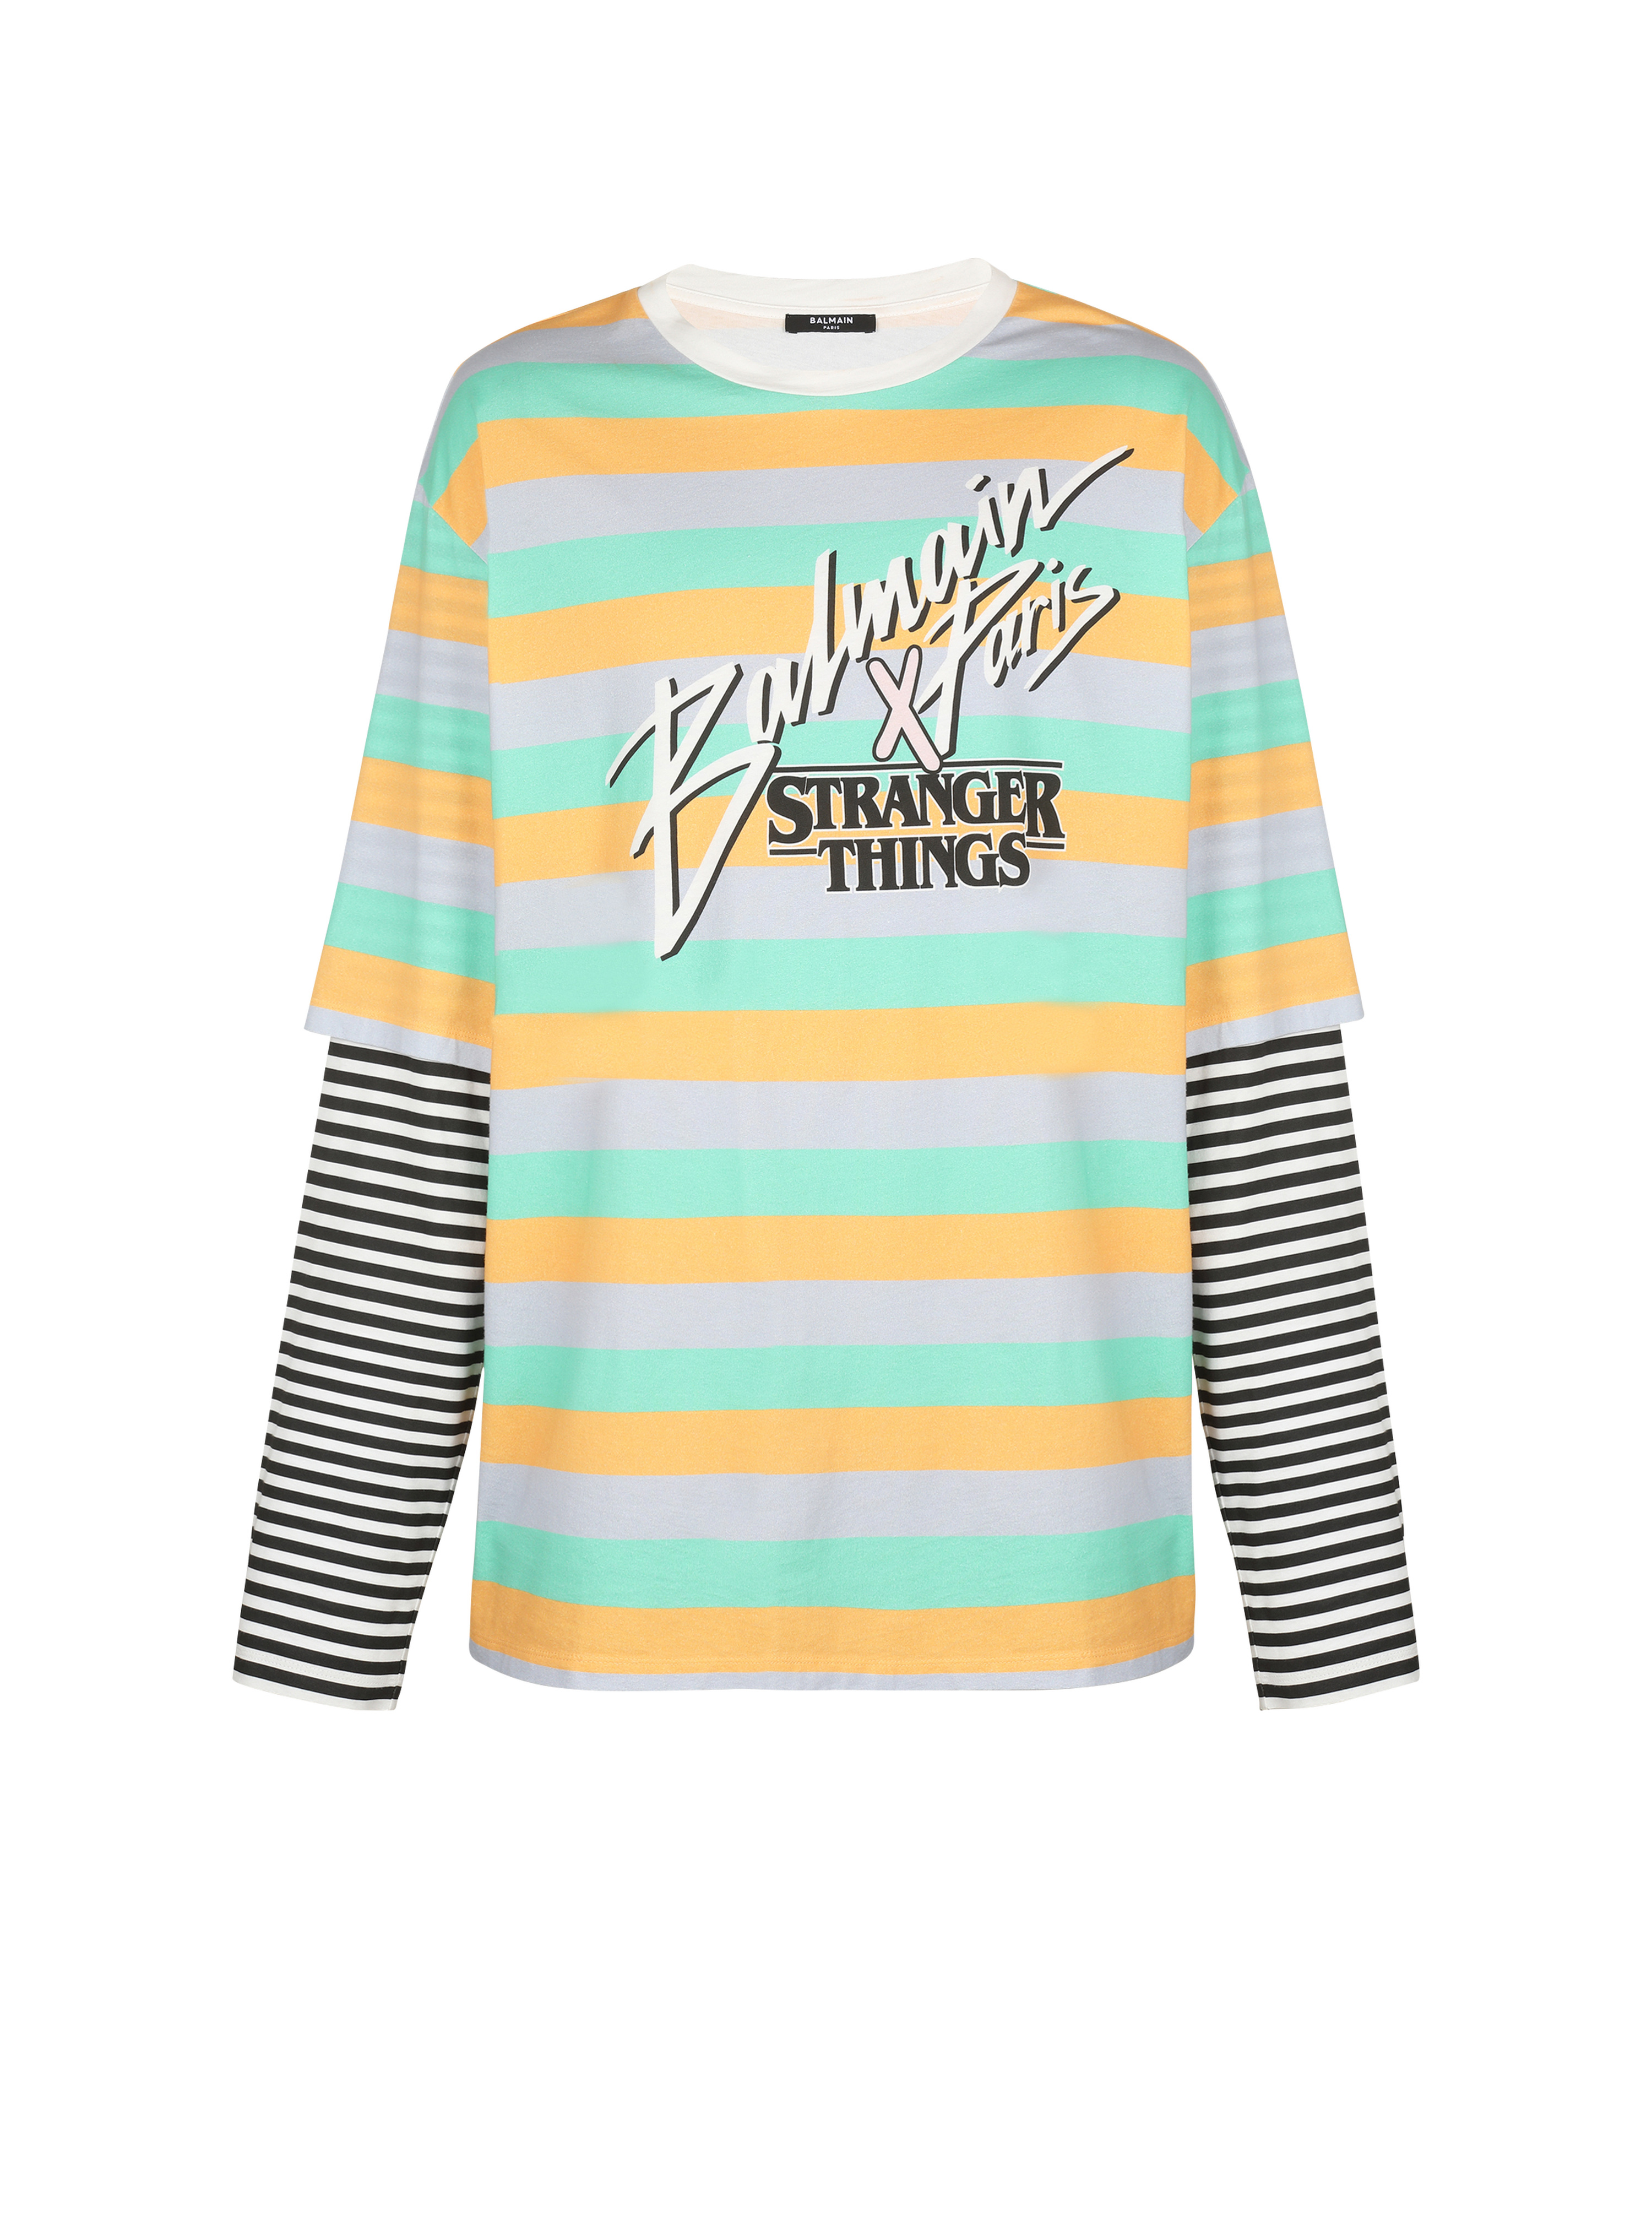 Balmain x Stranger Things - 超大尺寸双层袖T恤, multicolor